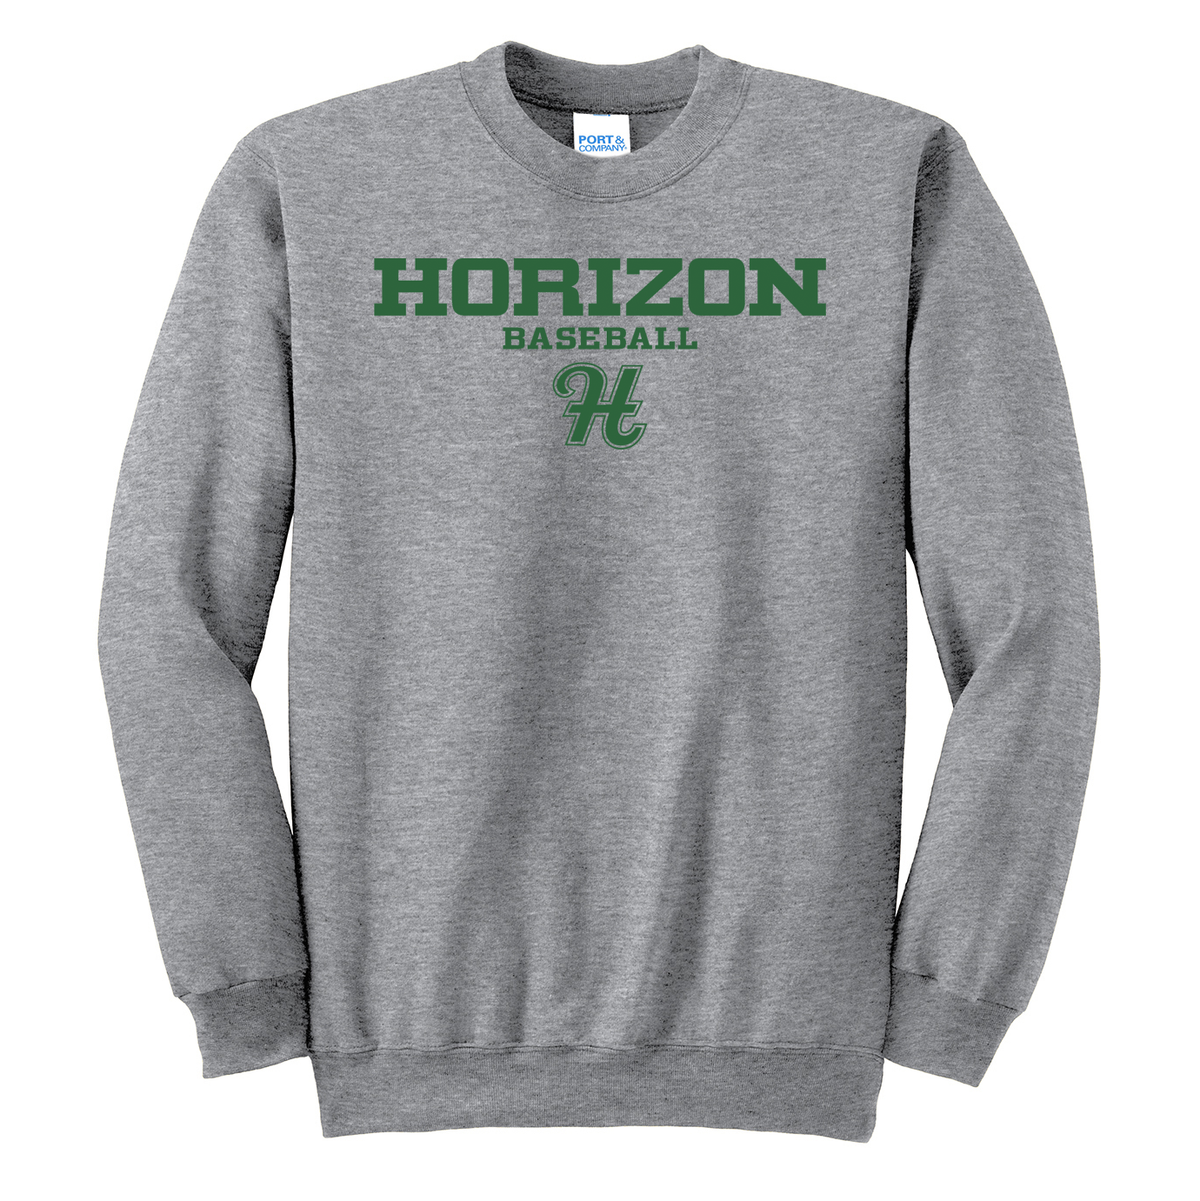 Horizon Baseball Crew Neck Sweater